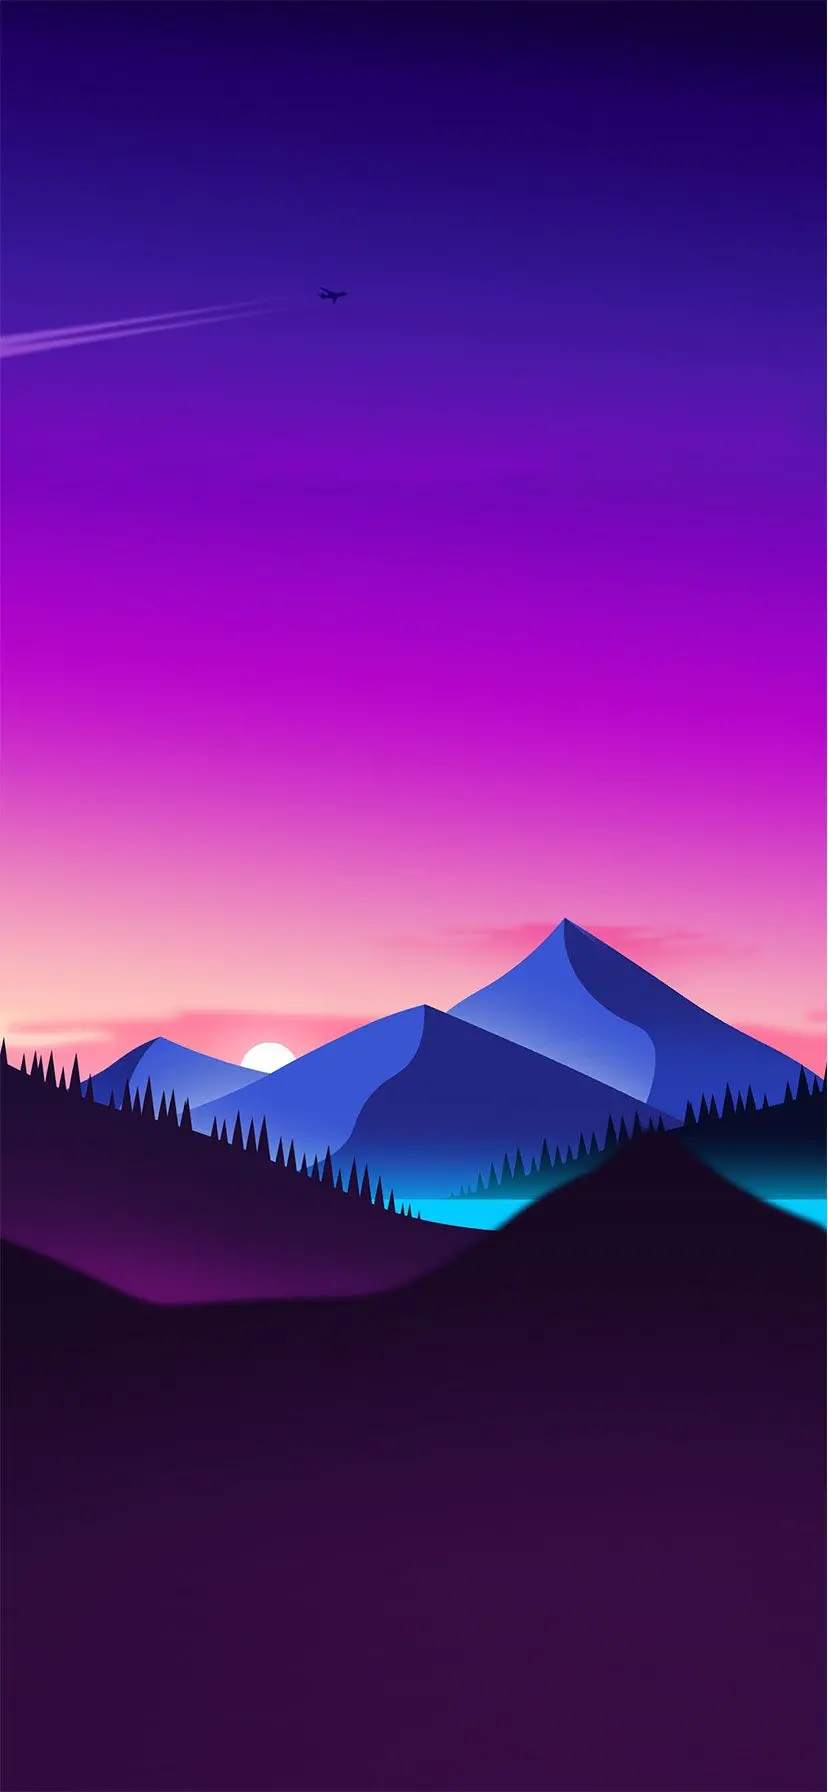 دانلود تصویر فانتزی باکیفیت HD از طبیعت کوهستان آبی رنگ و دشت مناسب گوشی اندروید سامسونگ